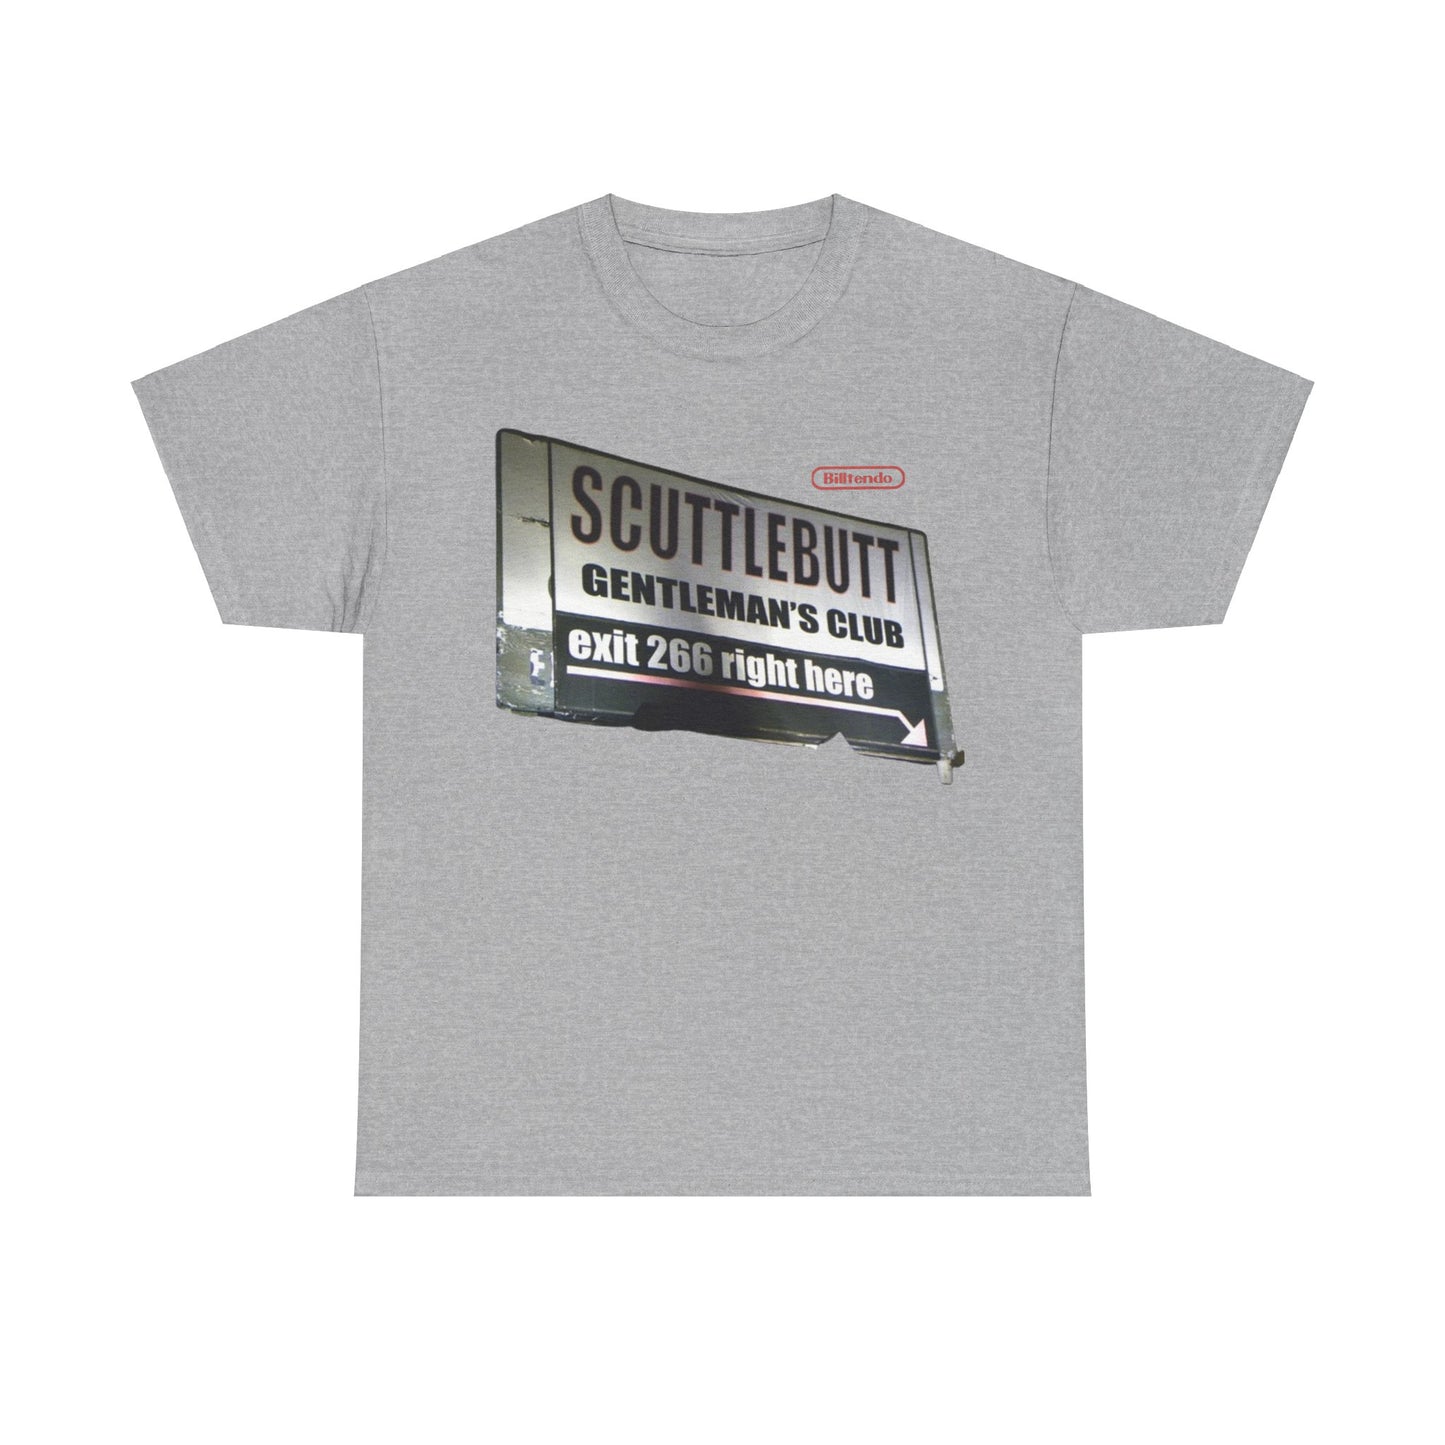 Scuttlebutt billboard T shirt